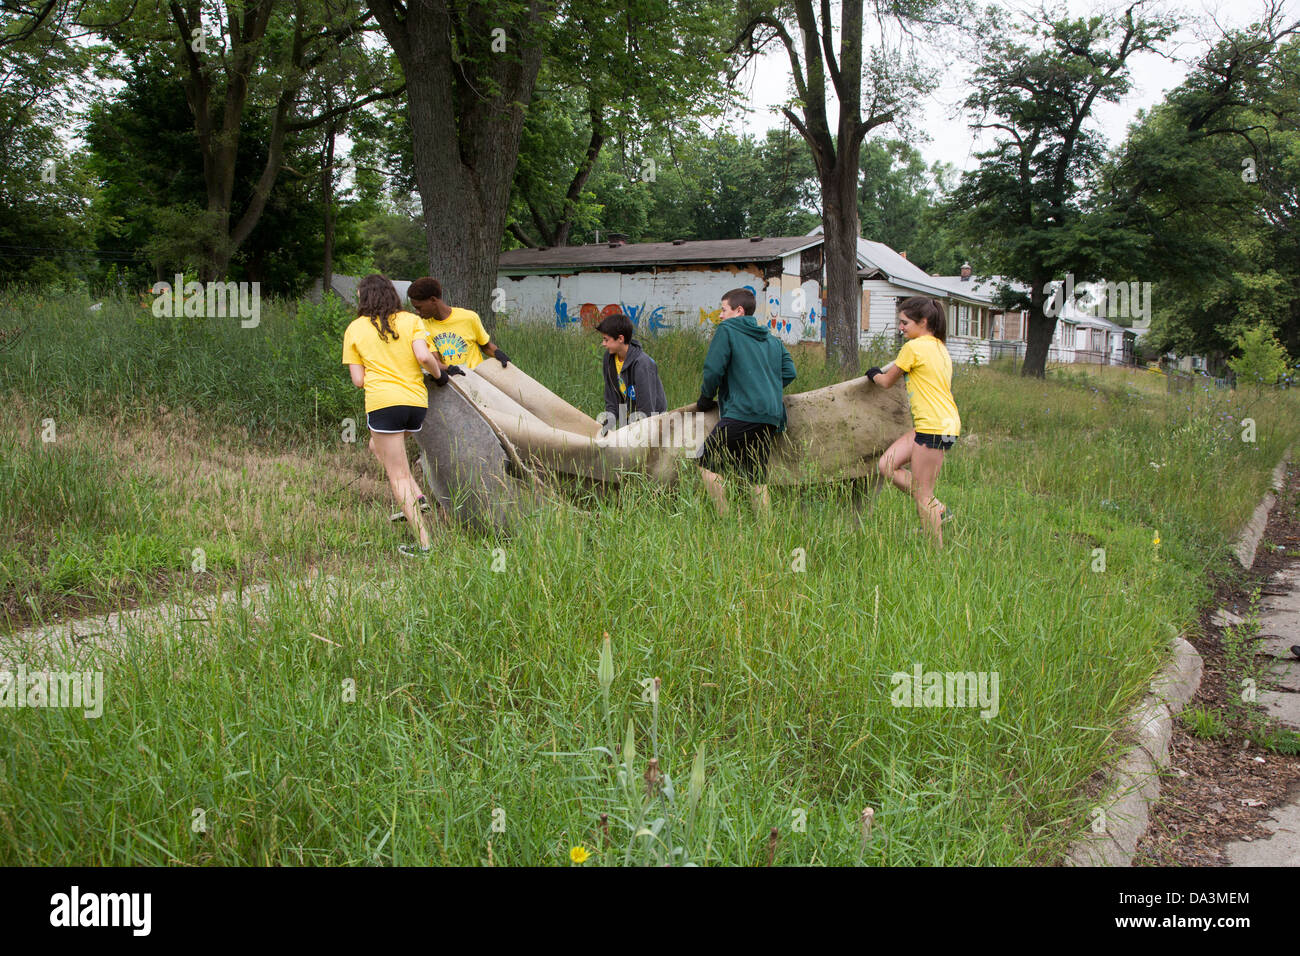 High school volunteers clean trash and debris in Brightmoor, one of the most distressed neighborhoods of Detroit. Stock Photo